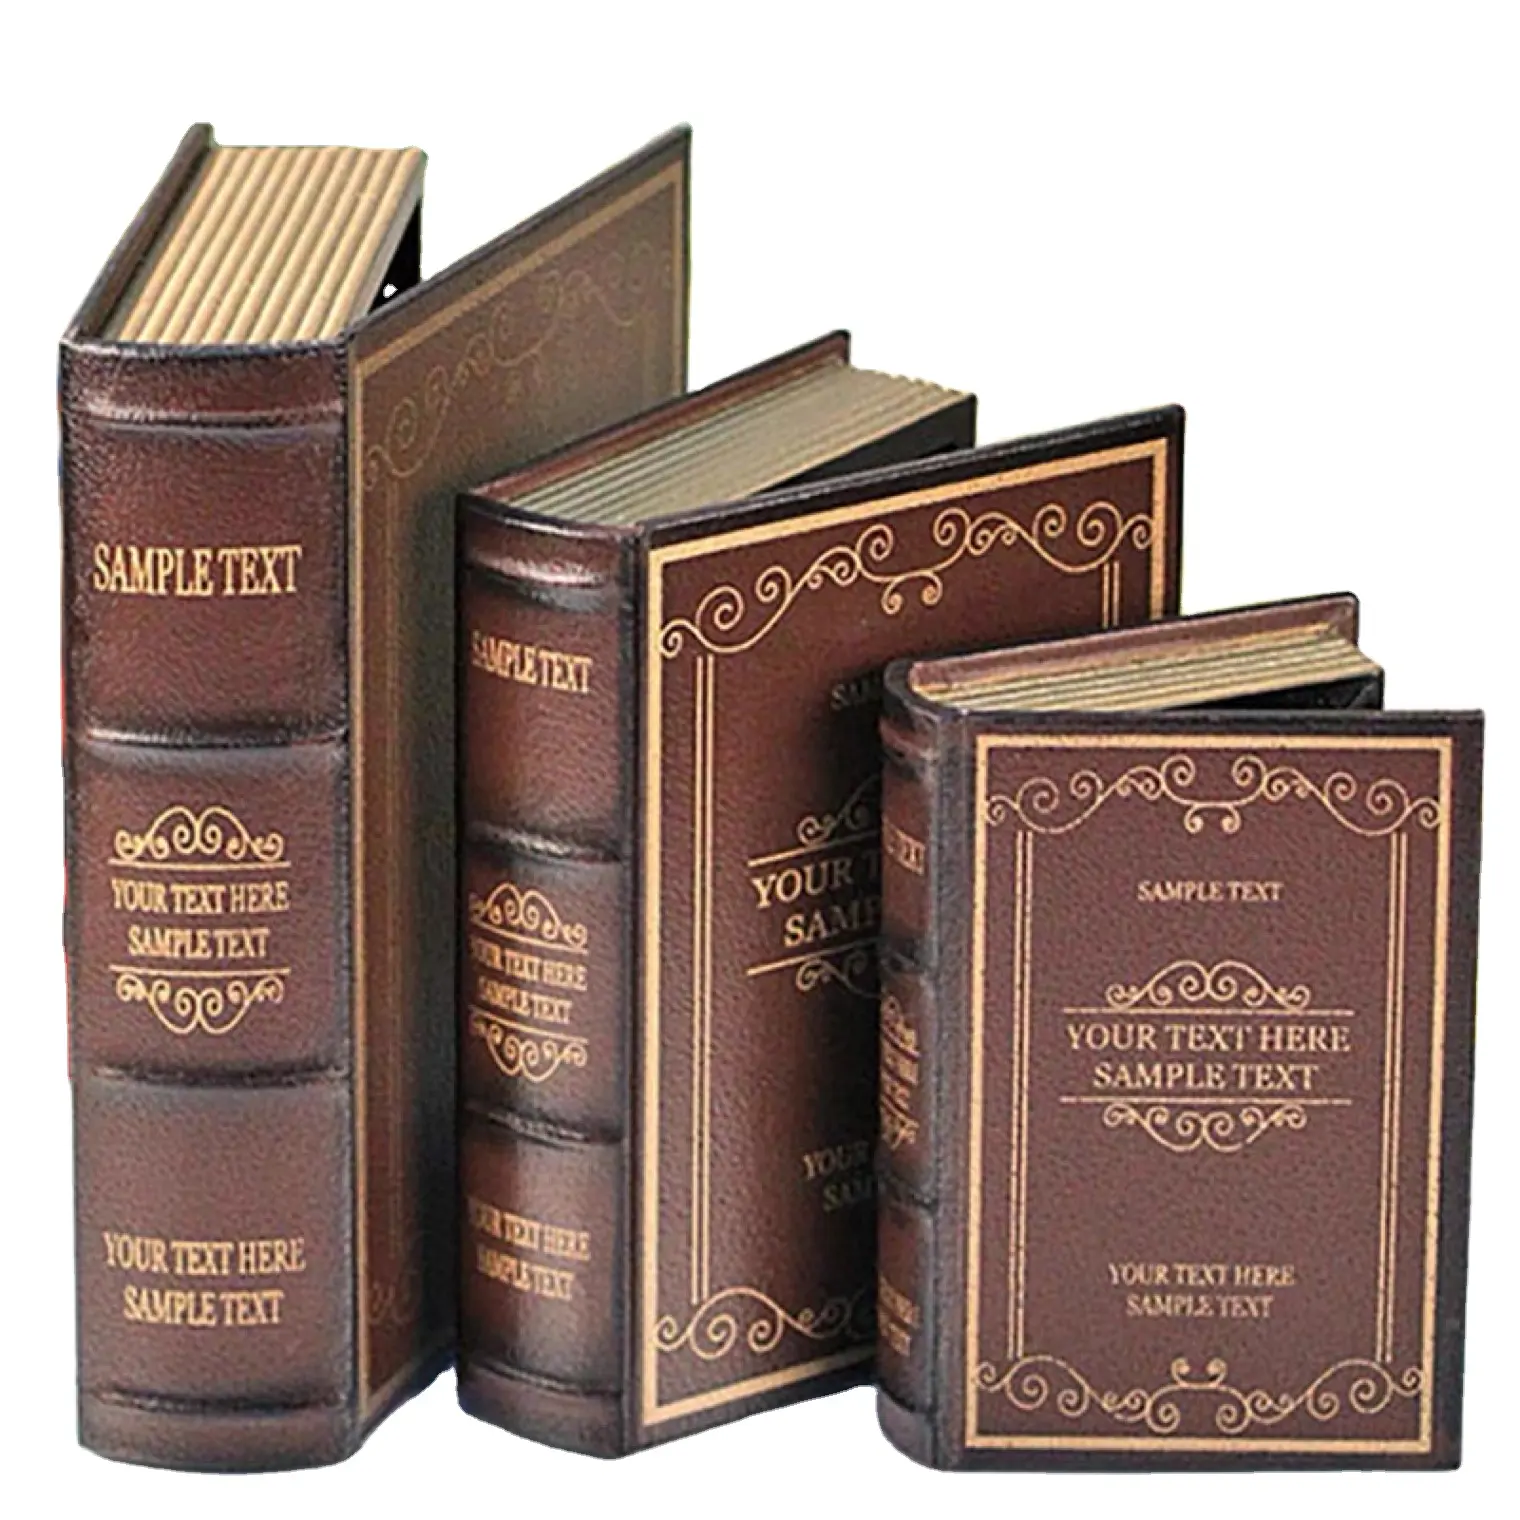 주문 까만 포장 Cajas Libros 자석 저장 호화스러운 가죽 나무로 되는 가짜 책 모양 선물 상자